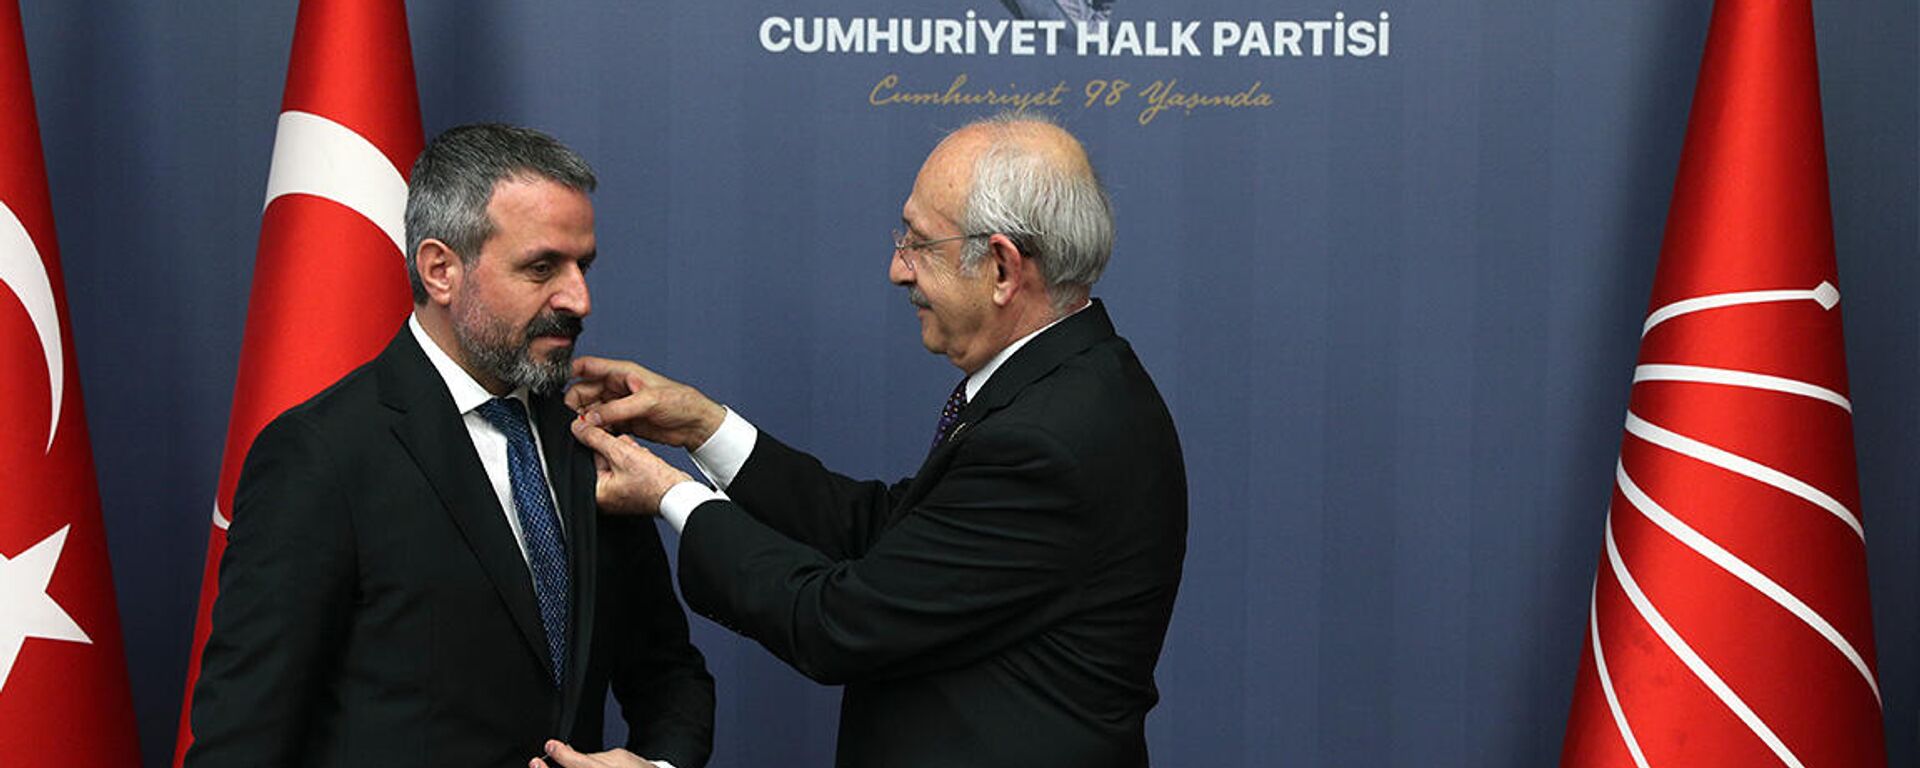 Kılıçdaroğlu, AK Parti'den CHP'ye katılan 20 kişinin rozetini taktı - Sputnik Türkiye, 1920, 19.01.2022